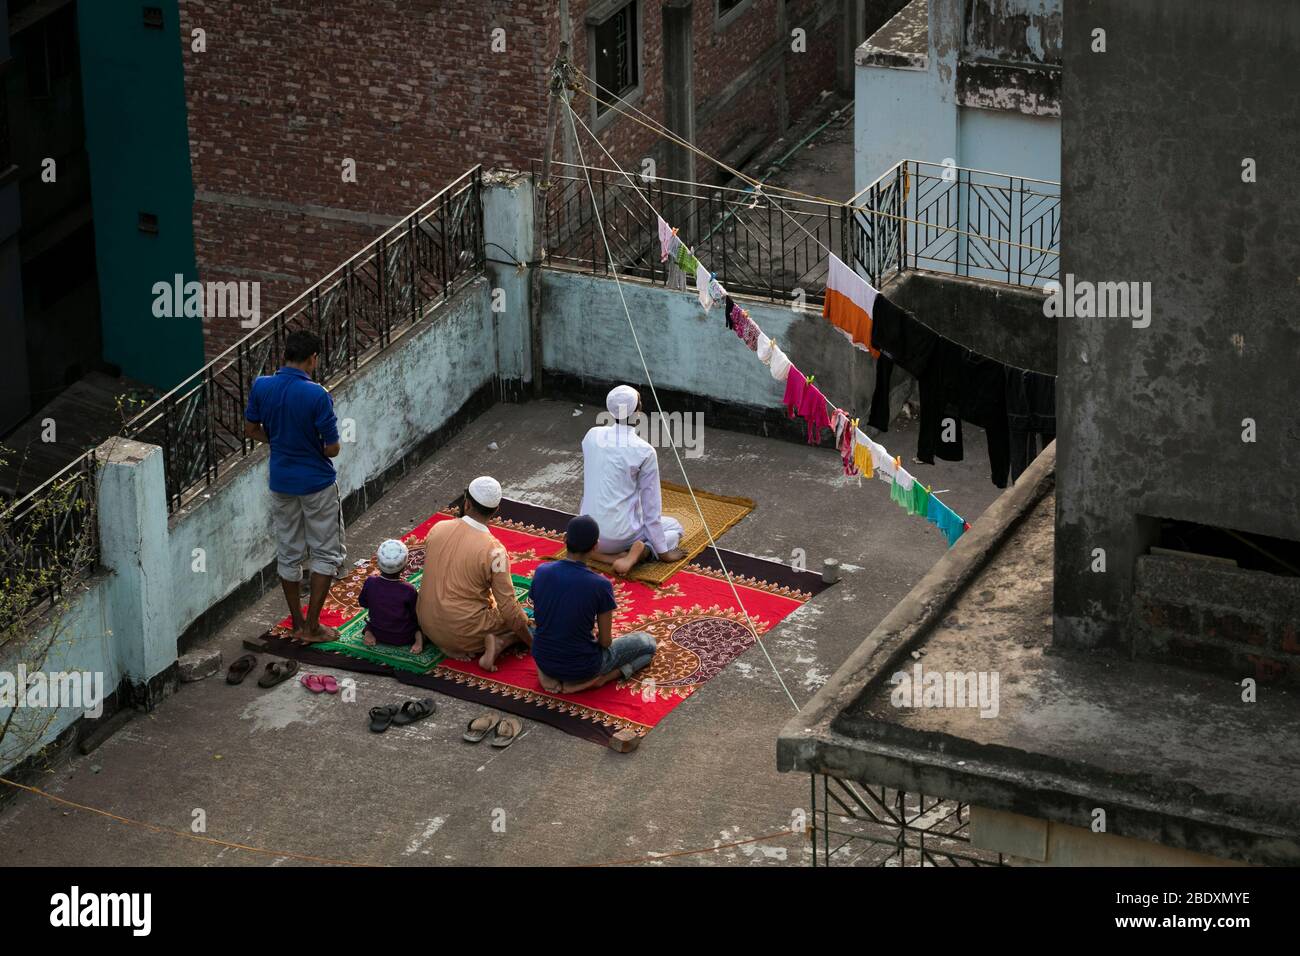 DHAKA, BANGLADESH - APRILE 10: I musulmani del Bangladesh pregano la loro preghiera sul tetto di un edificio durante la chiusura imposta dal governo come un preventivo me Foto Stock